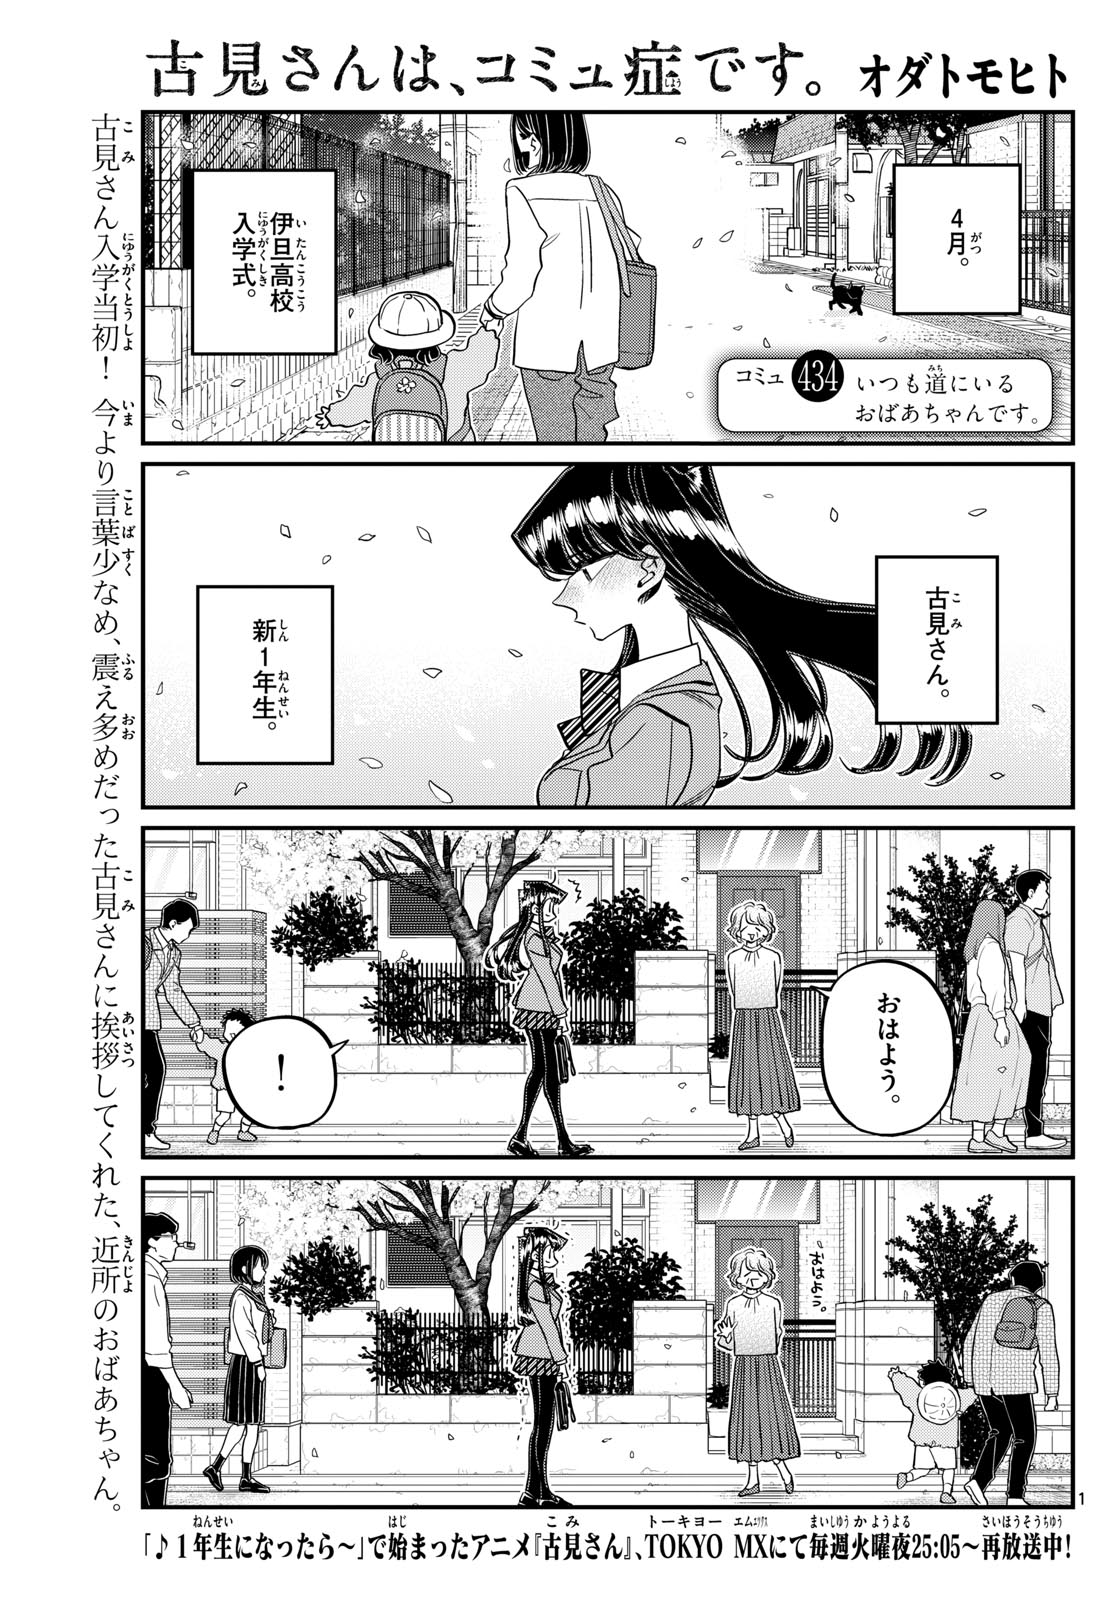 Komi-san wa Komyushou Desu - Chapter 434 - Page 1